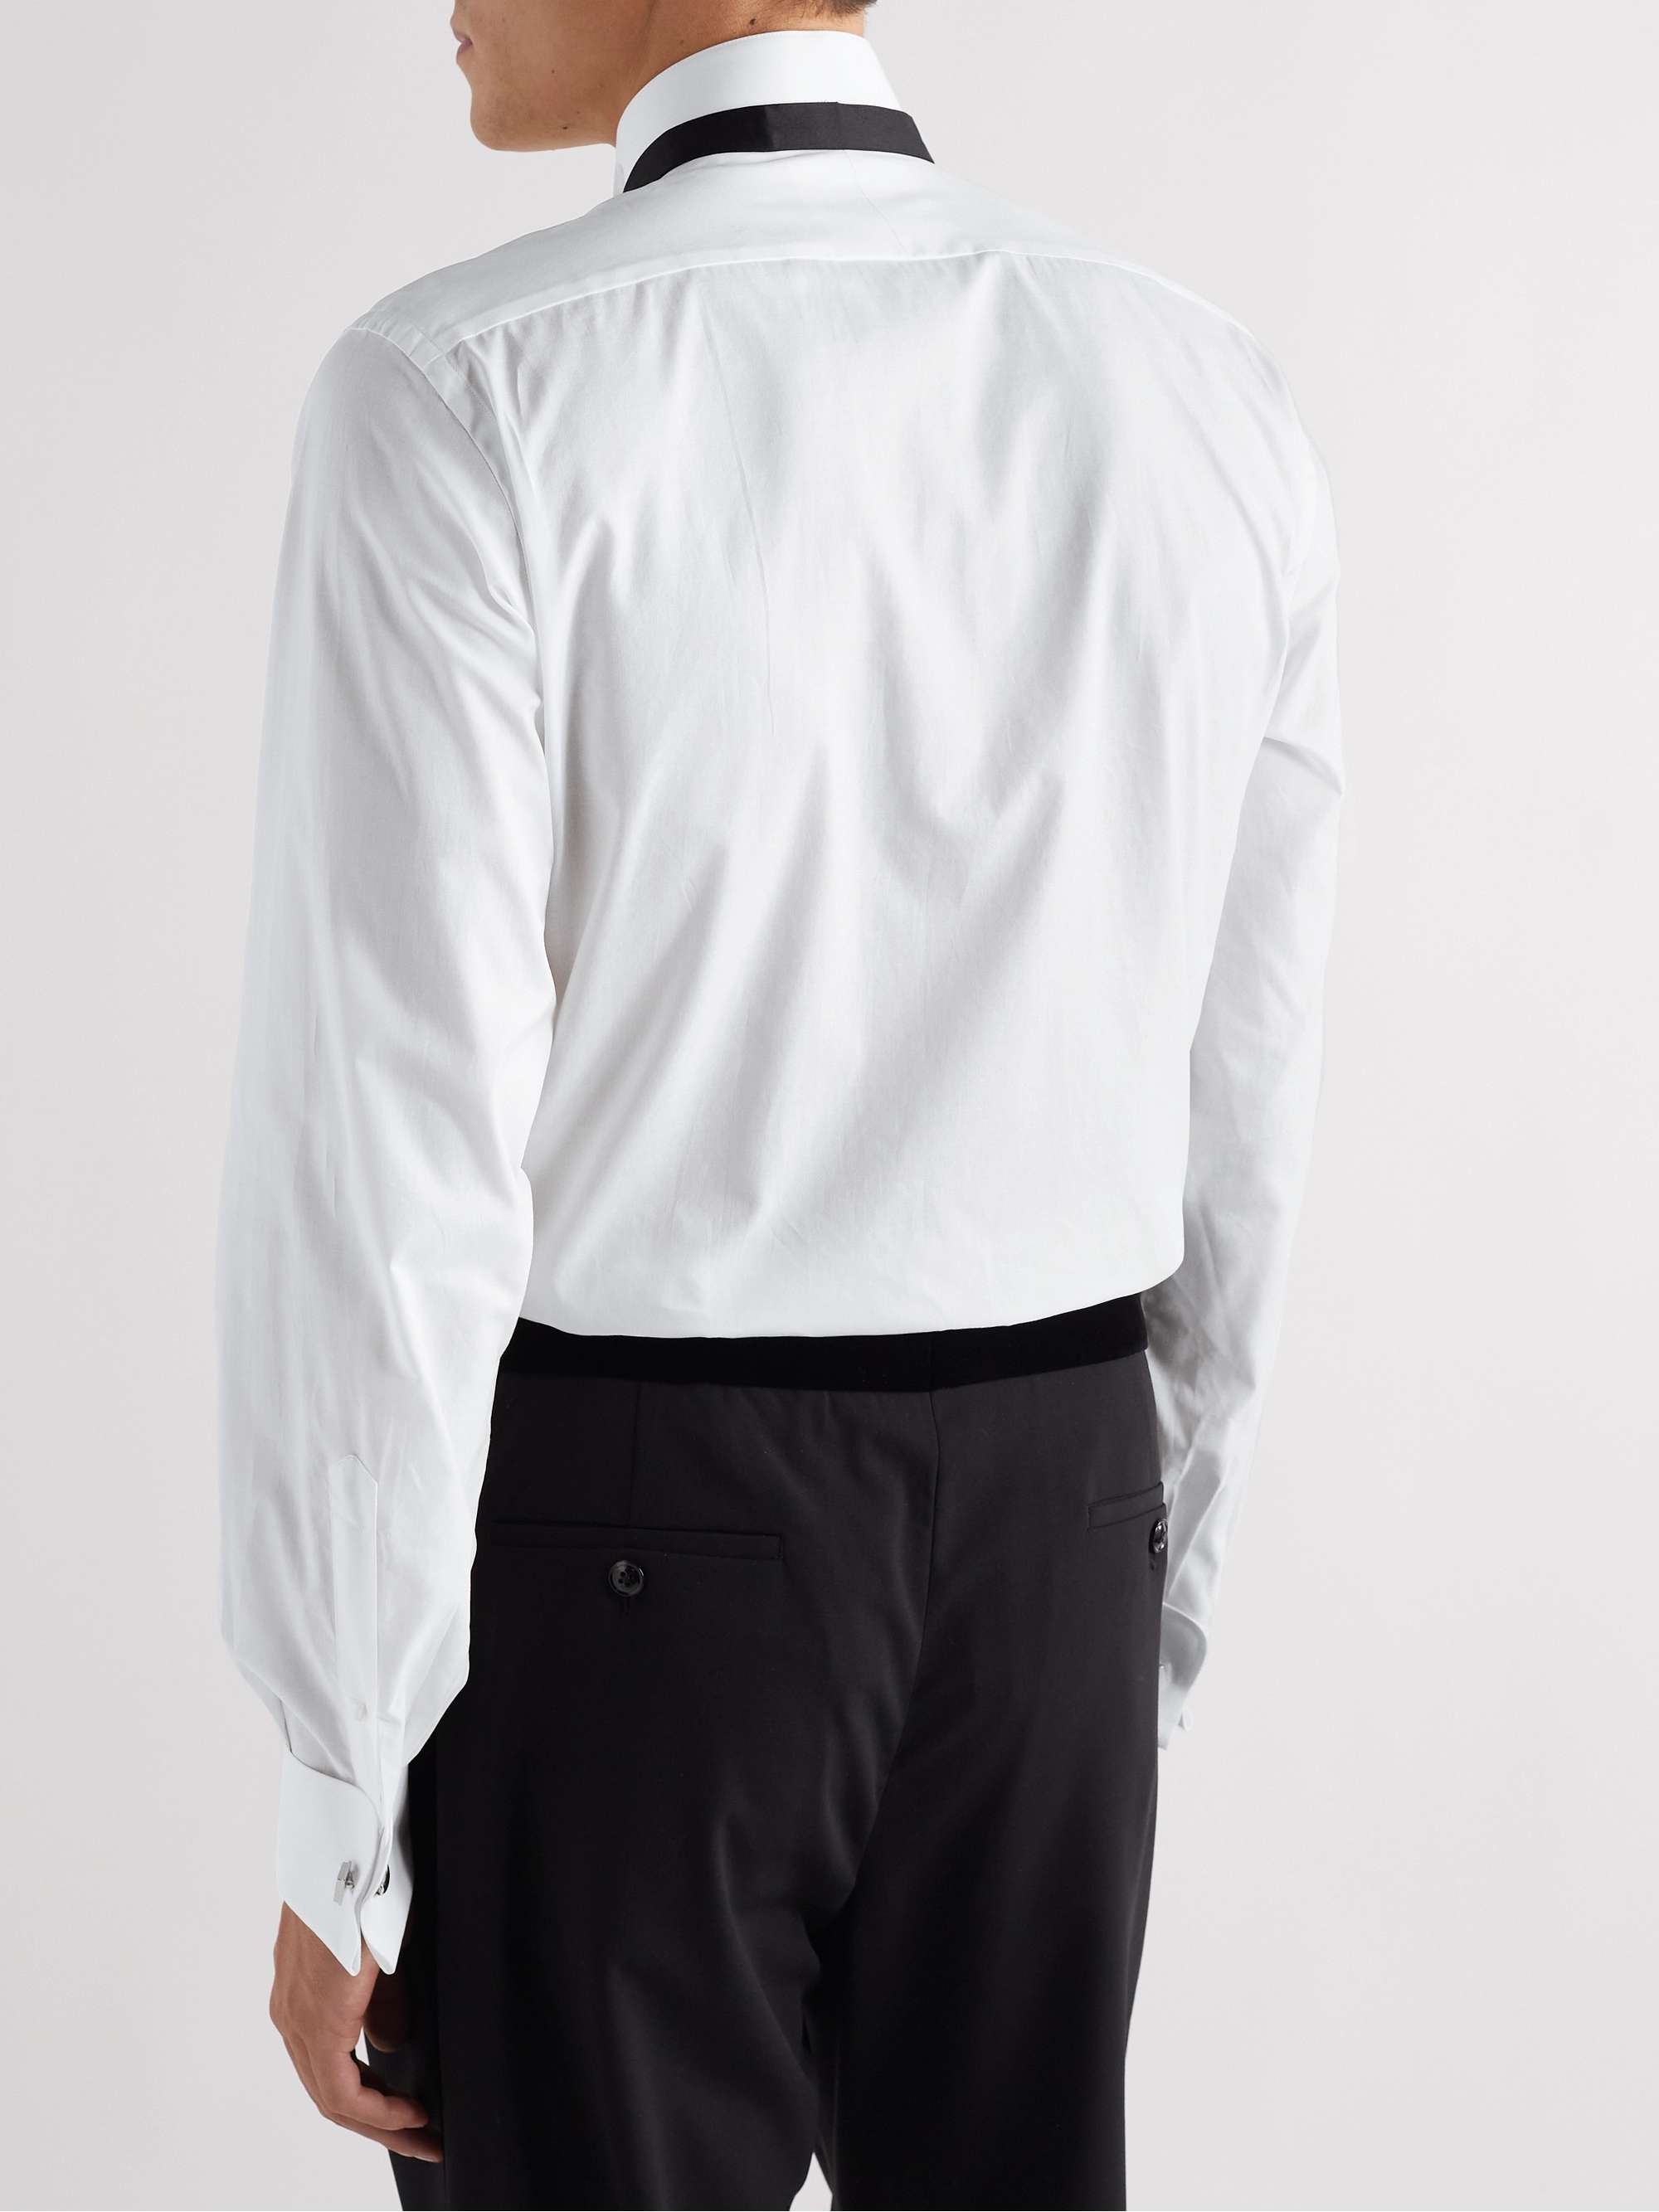 TOM FORD Wing-Collar Bib-Front Cotton-Poplin Tuxedo Shirt